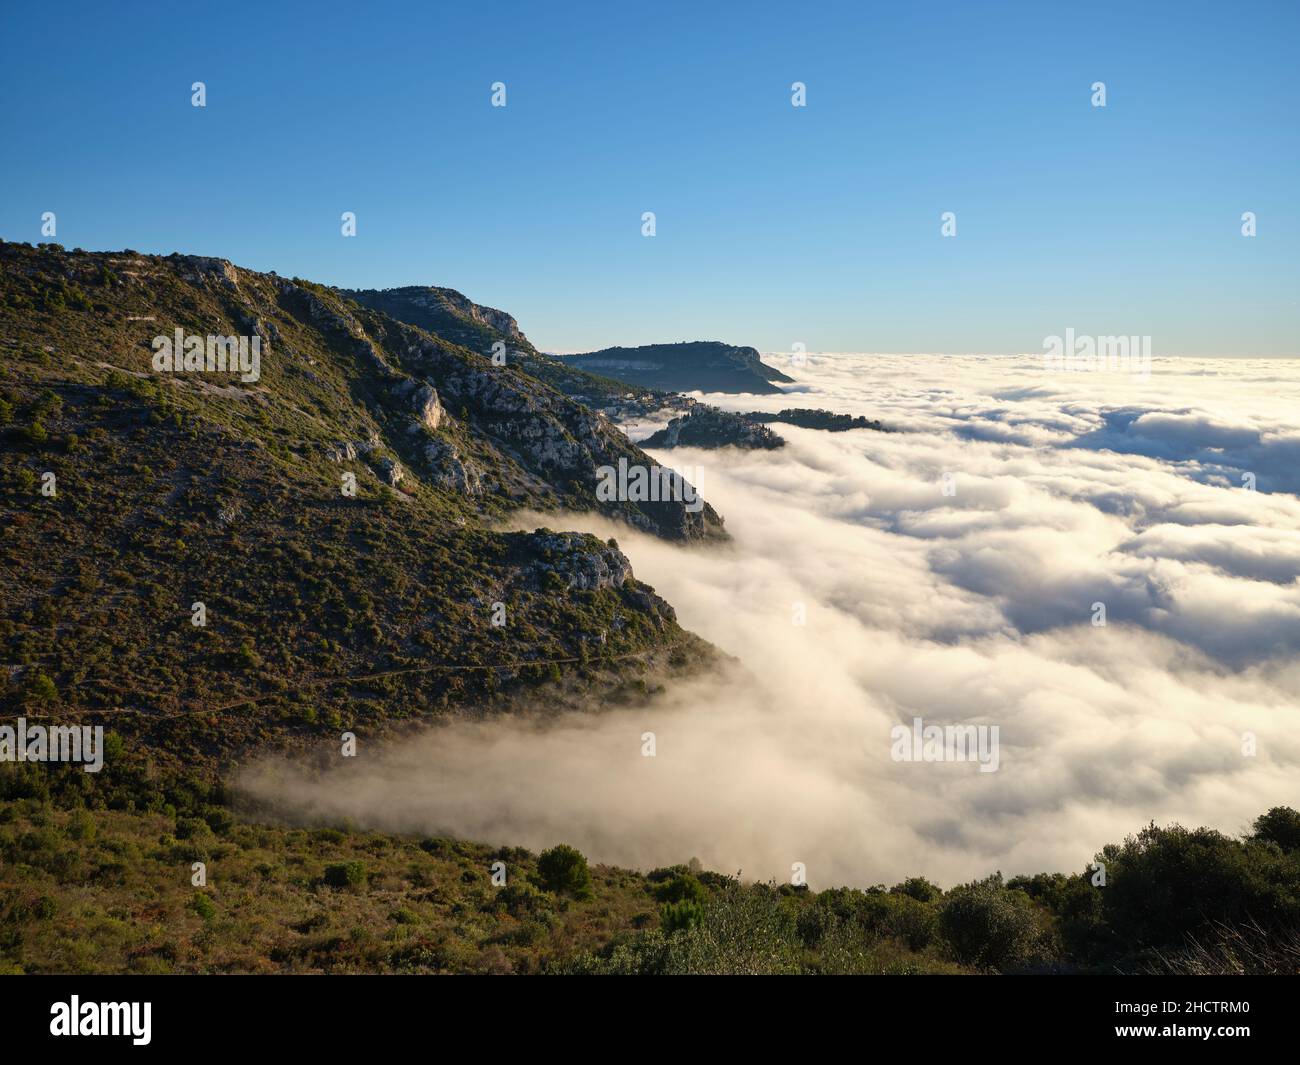 El paisaje montañoso de la Riviera Francesa con vistas a un mar de nubes sobre el Mar Mediterráneo; un lugar muy raro. Èze-Village, Francia. Foto de stock